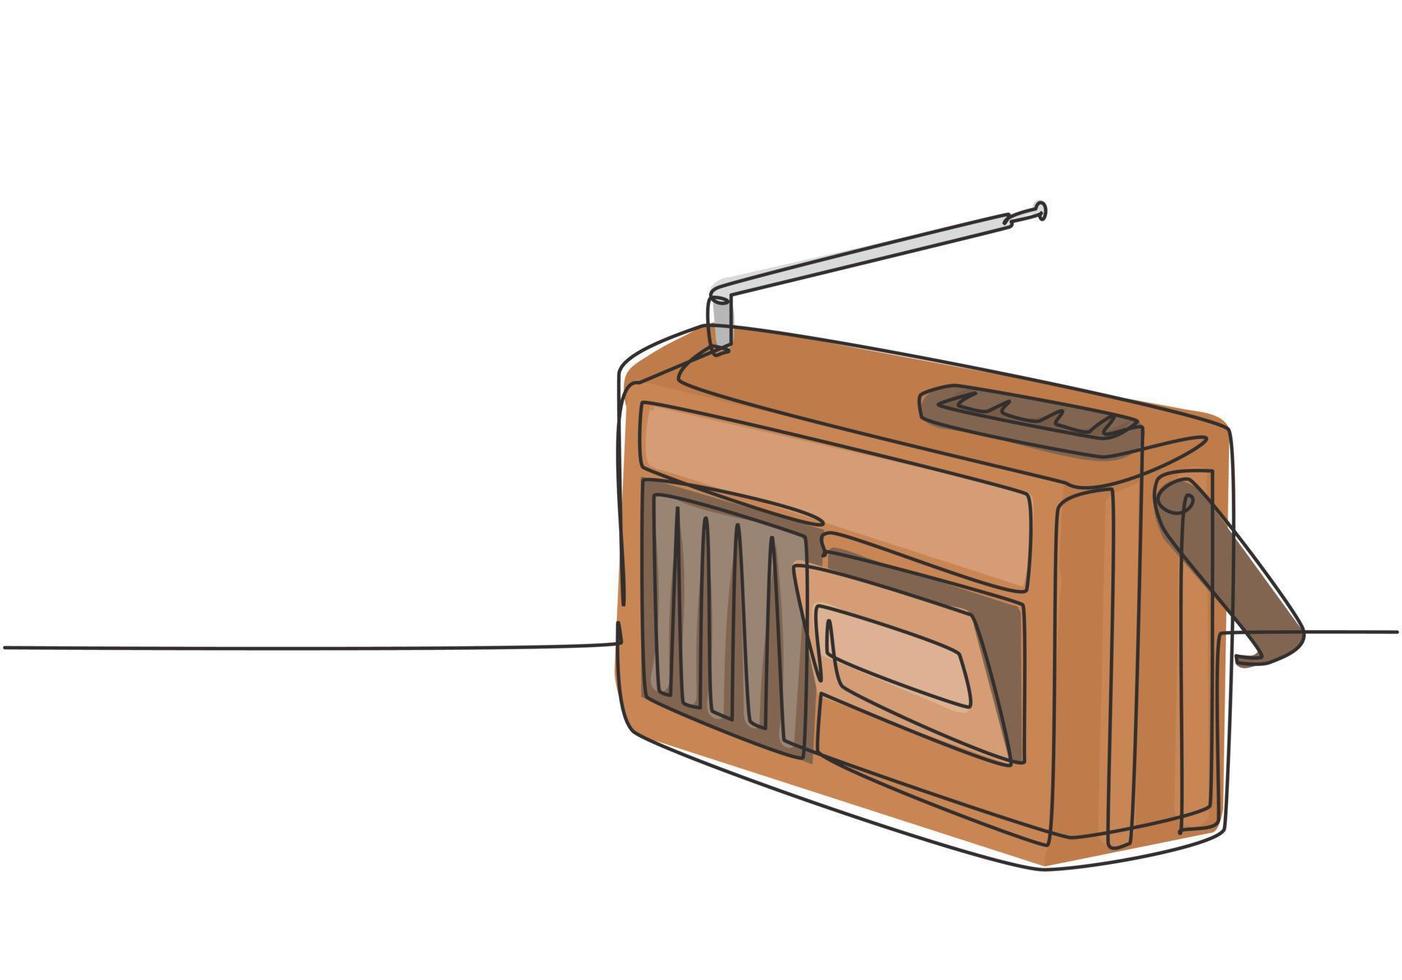 eine einzige Strichzeichnung von Retro-altmodischem analogem Radioband. Antikes Vintage-Audio-Technologie-Konzept. Musik-Player kontinuierliche Linie zeichnen Design-Grafik-Vektor-Illustration vektor